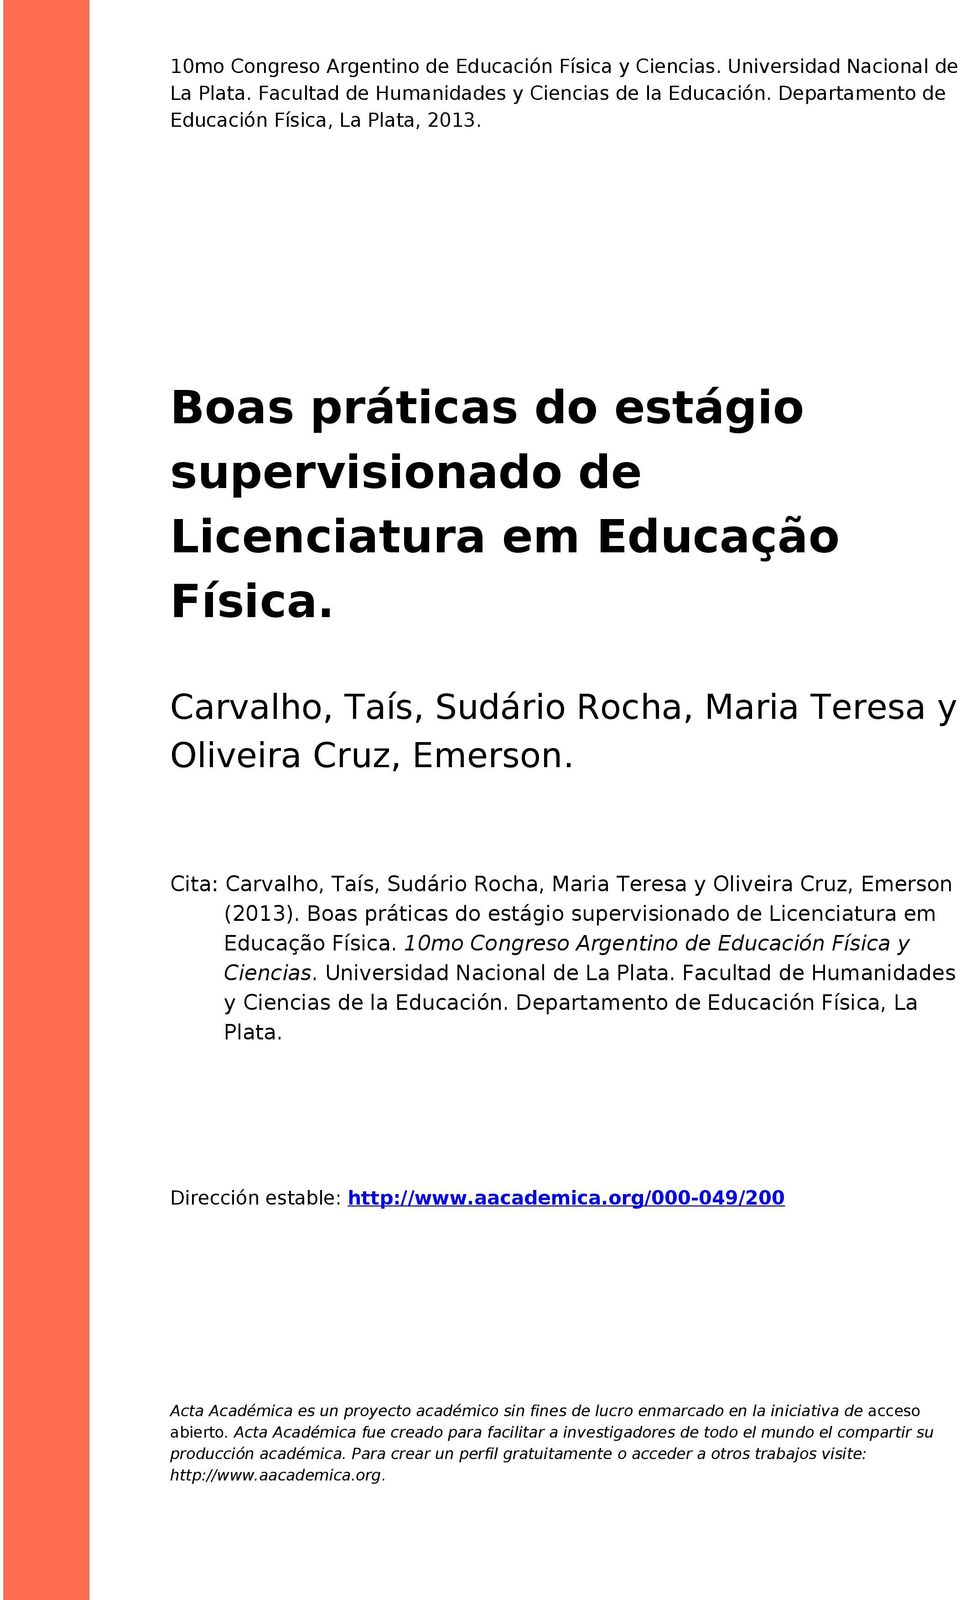 Cita: Carvalho, Taís, Sudário Rocha, Maria Teresa y Oliveira Cruz, Emerson (2013). Boas práticas do estágio supervisionado de Licenciatura em Educação Física.